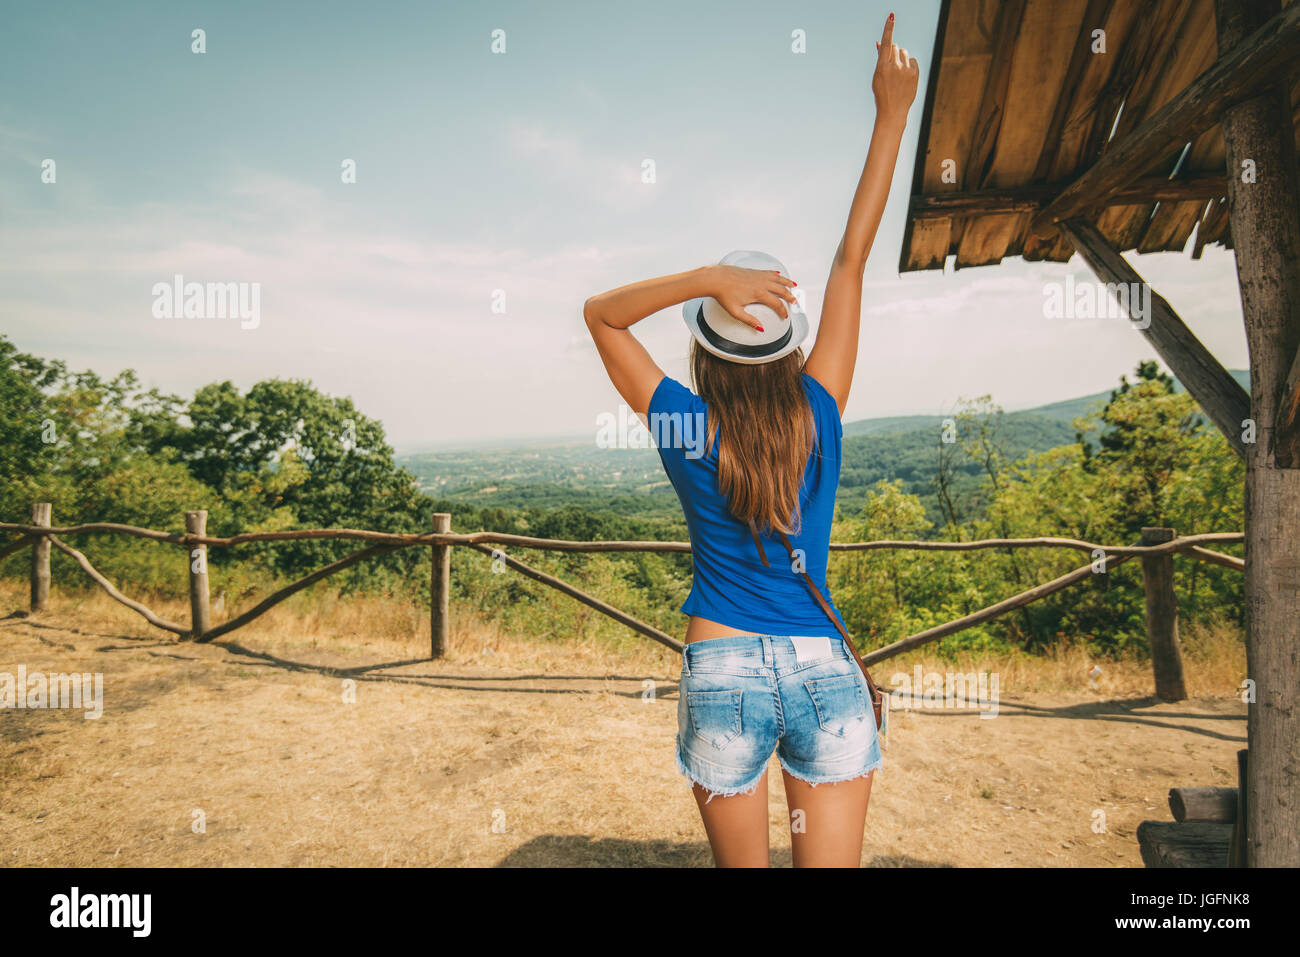 Stets gut gelaunte Frau im Sommer Reisen Urlaub stehen mit dem Aussichtspunkt mit ausgestrecktem Arm. Sicht nach hinten. Stockfoto